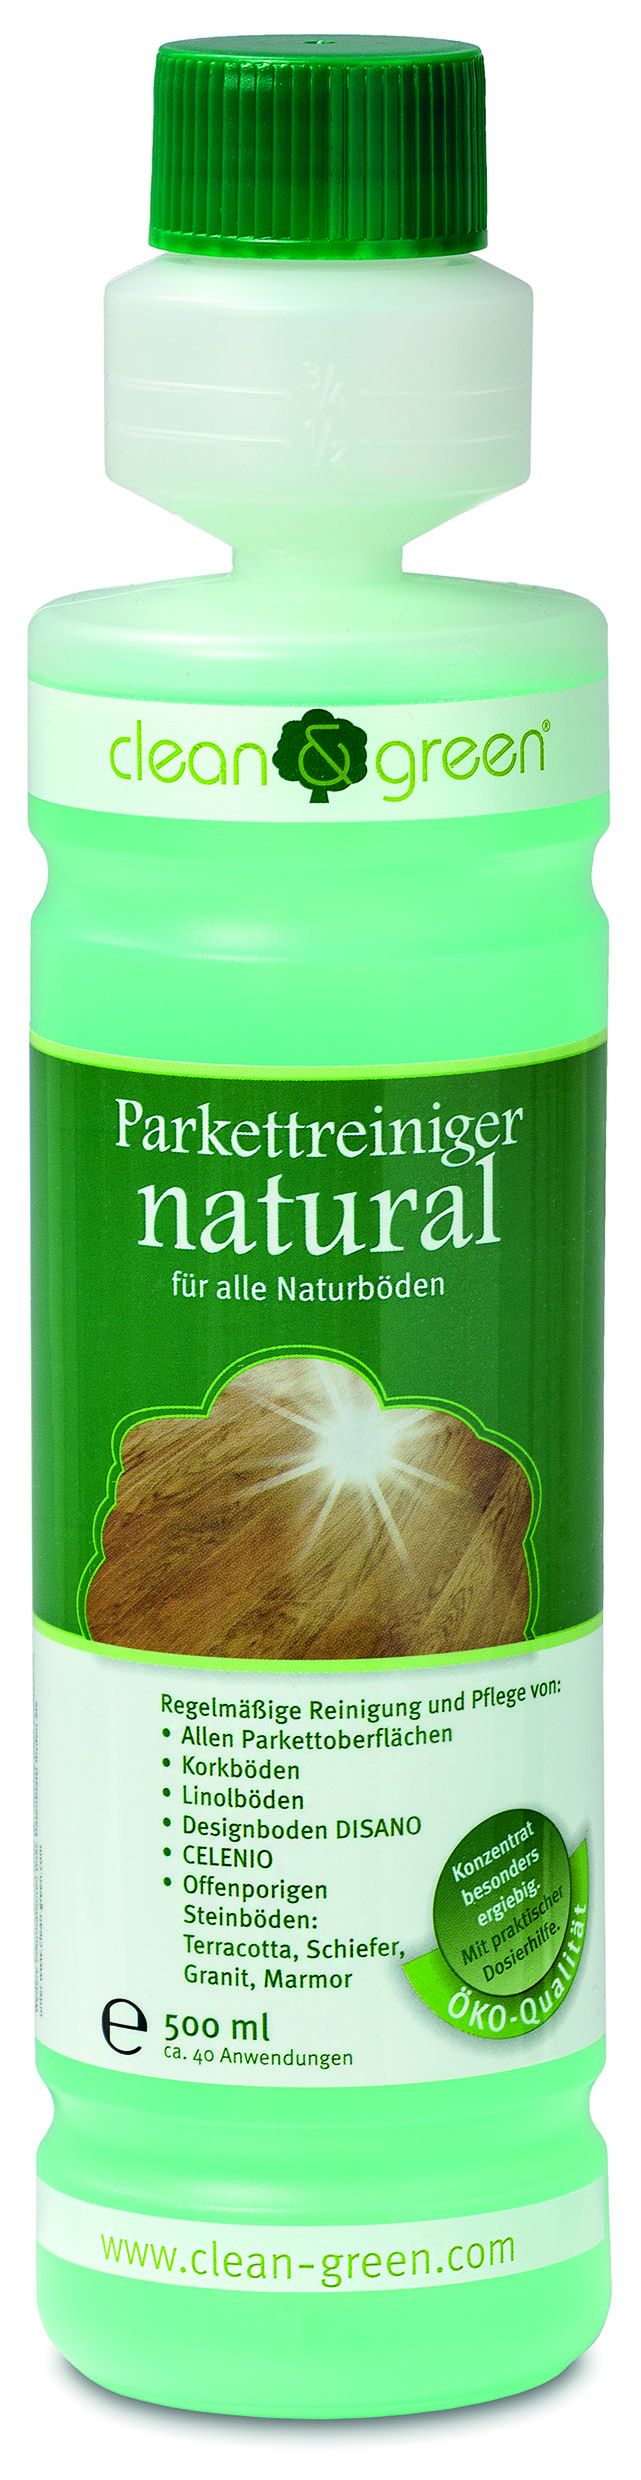 Haro clean & green Natural Parkettreiniger (grün), 0,5l